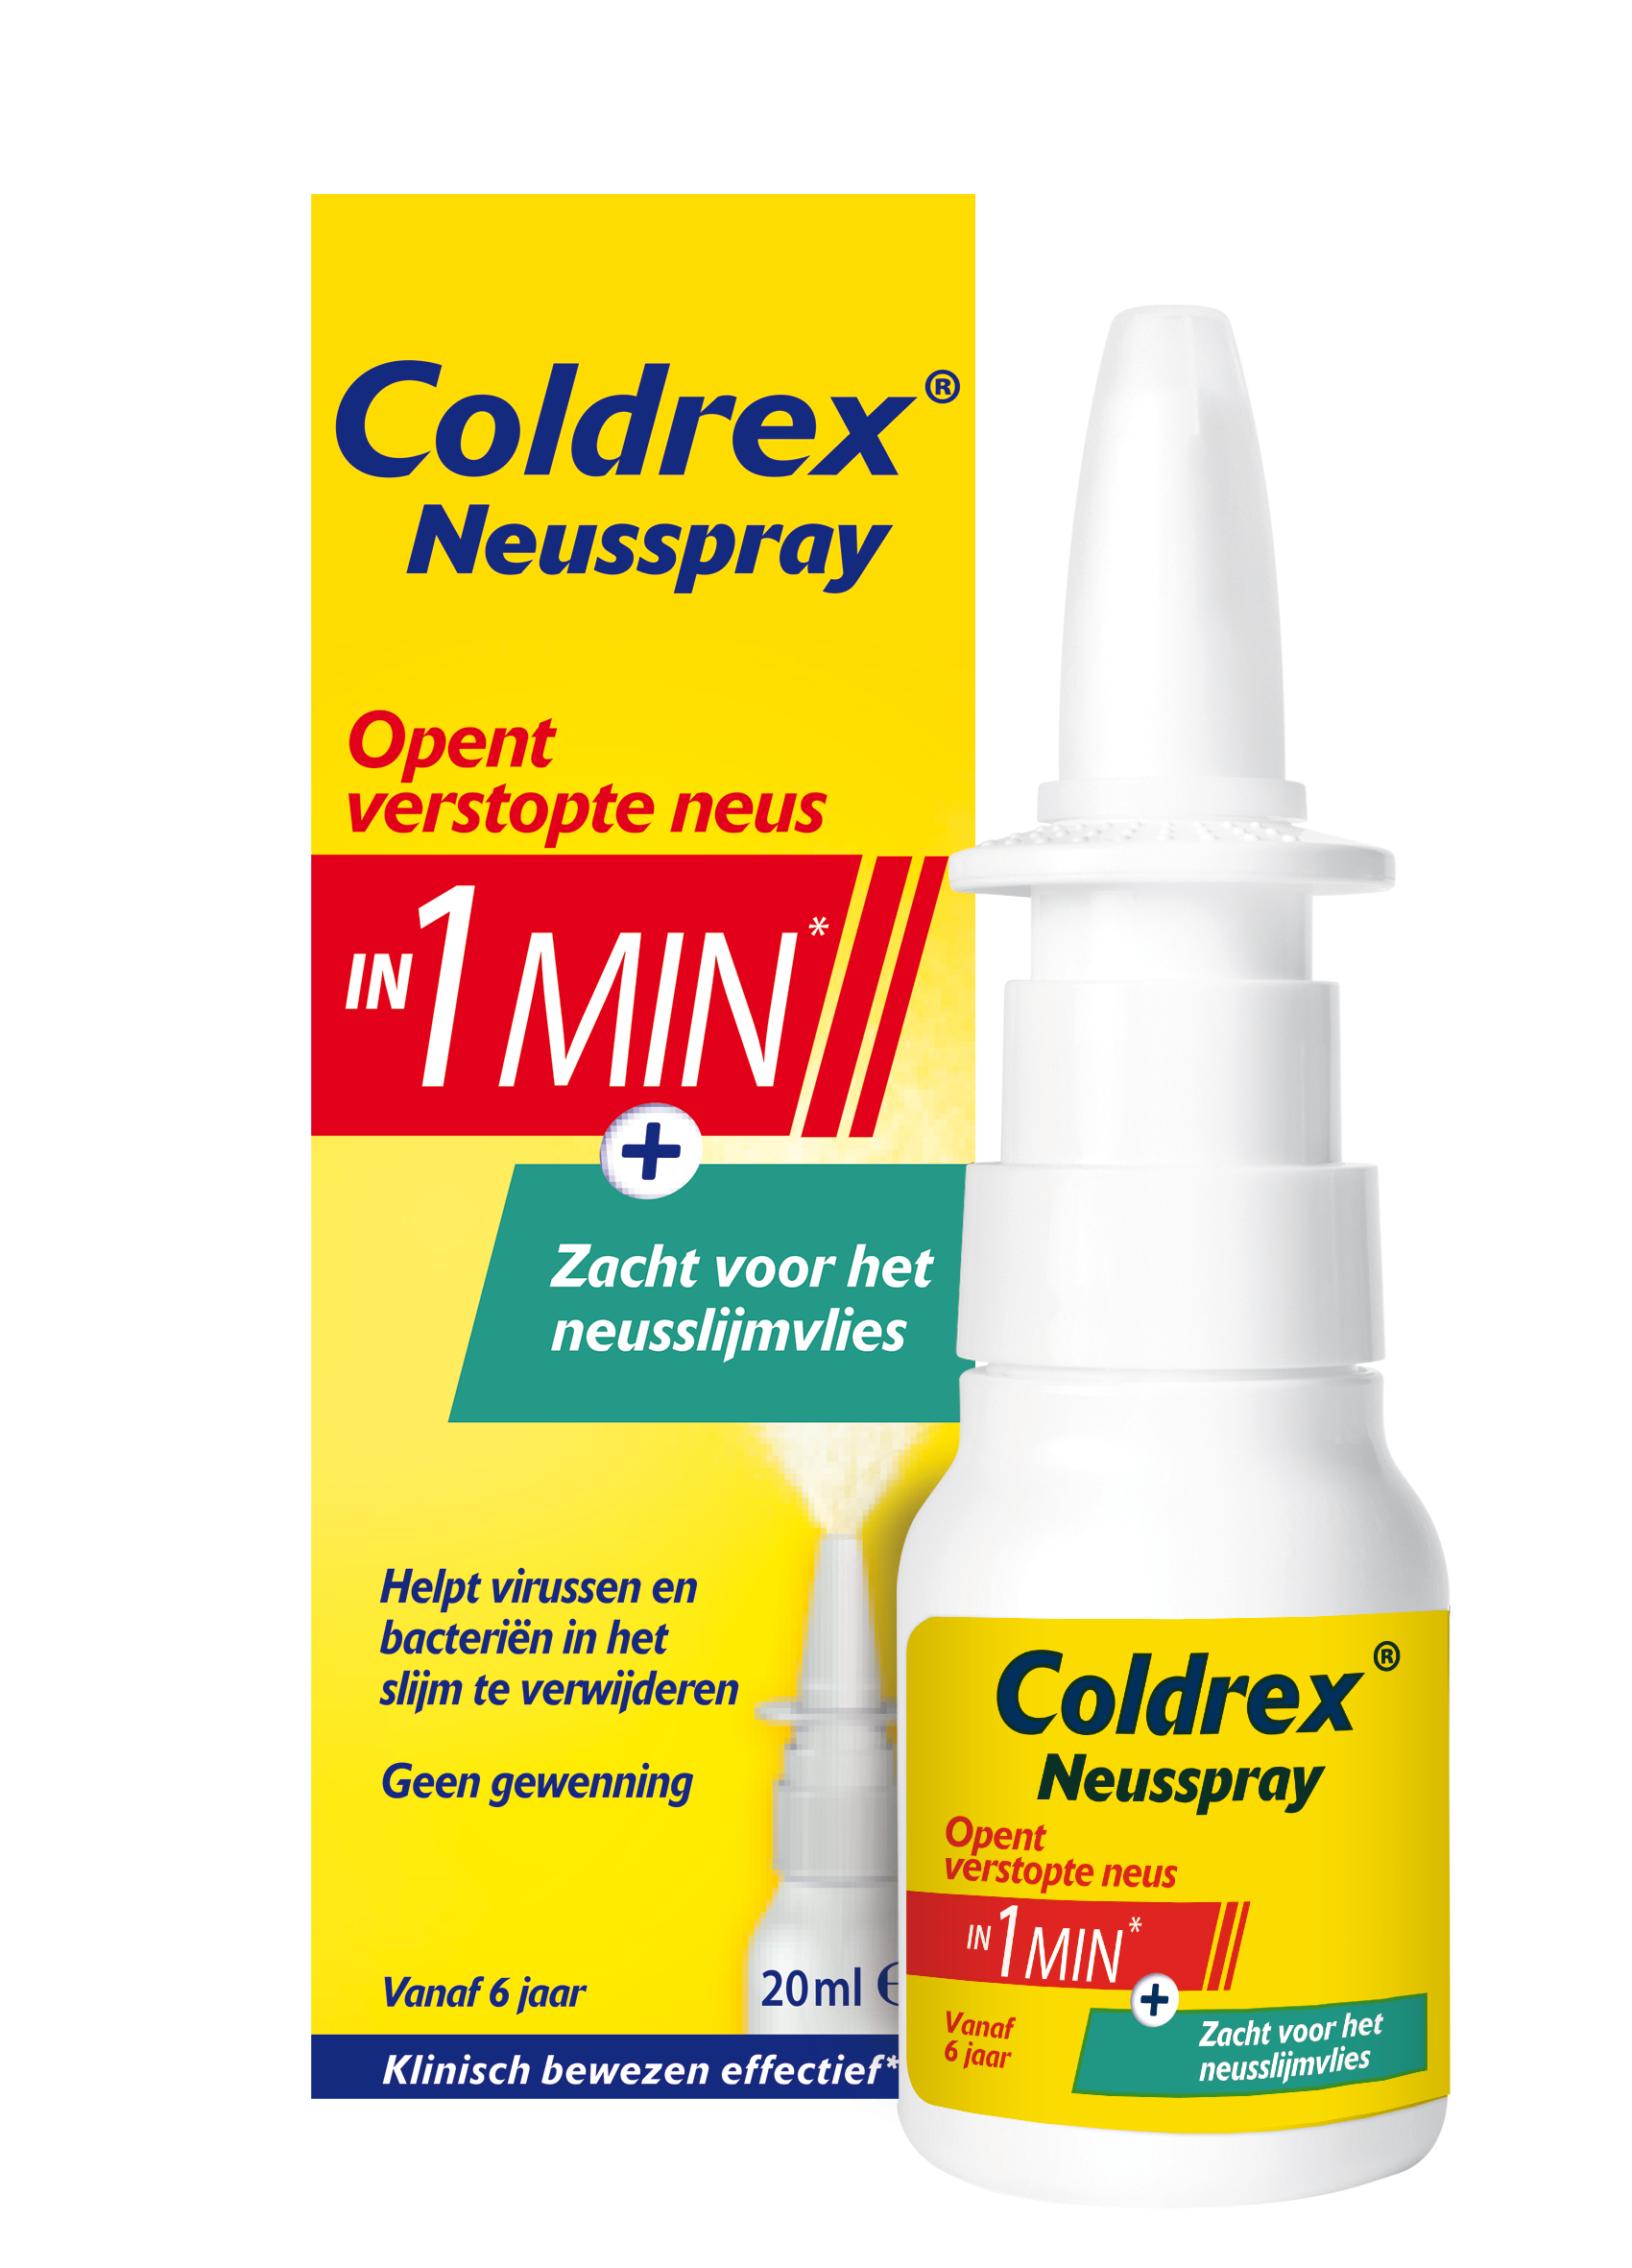 Coldrex Neusspray 1MIN